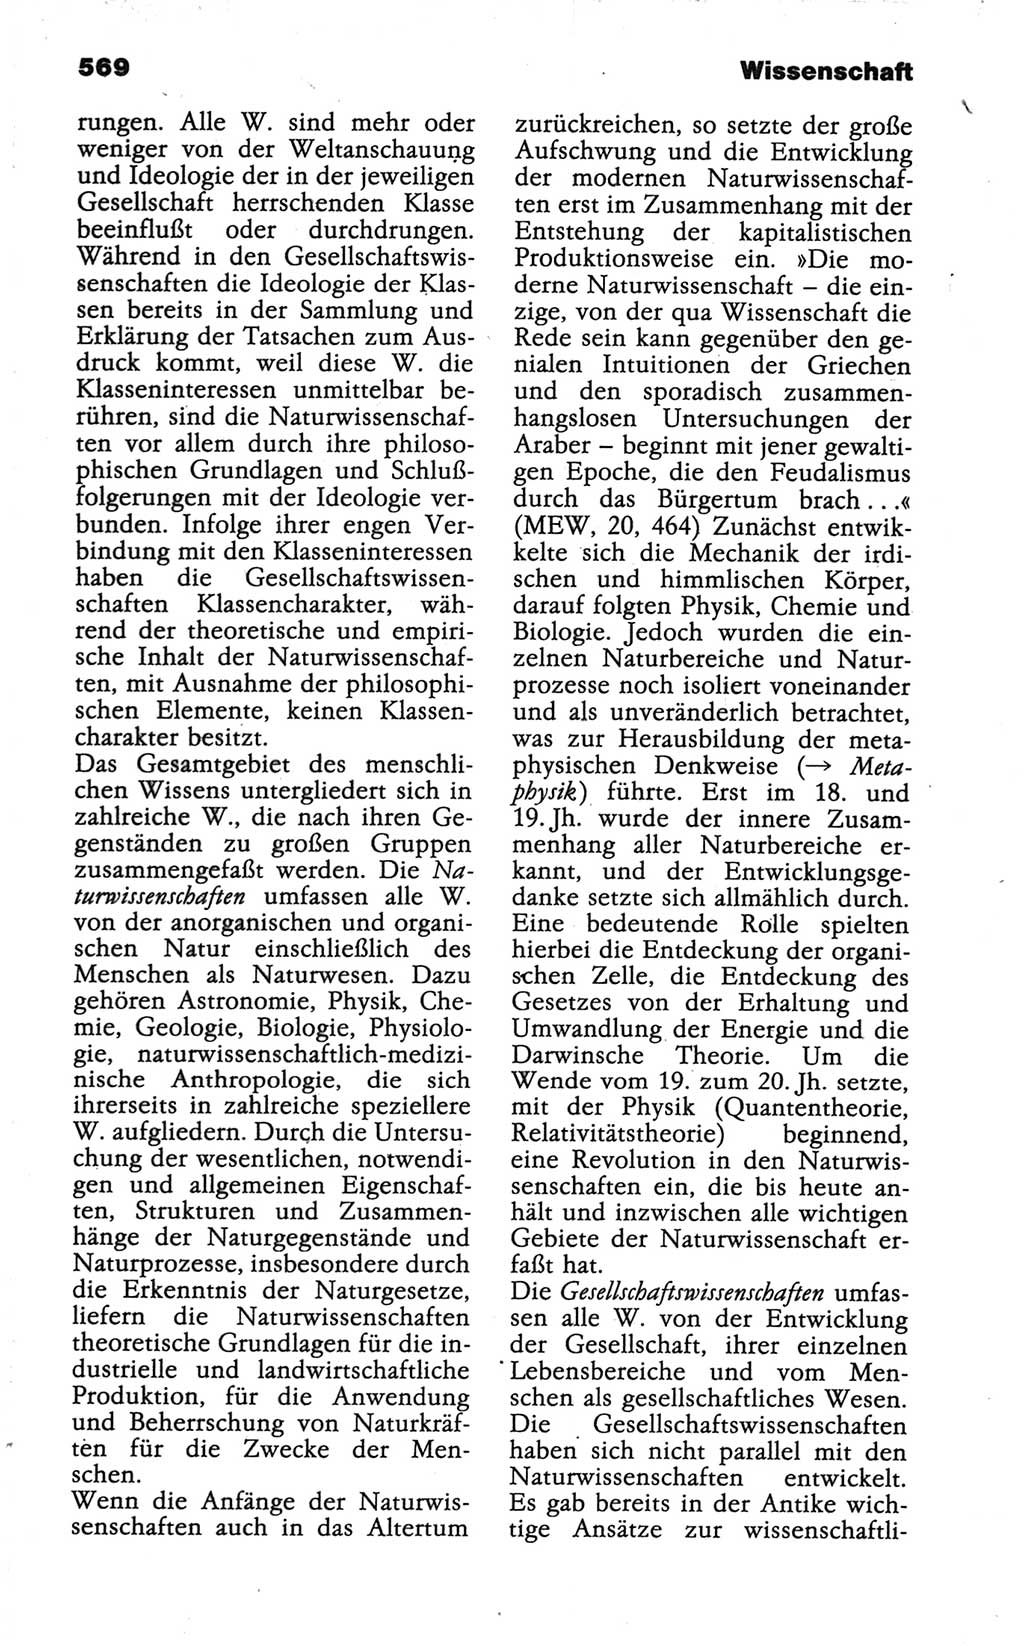 Wörterbuch der marxistisch-leninistischen Philosophie [Deutsche Demokratische Republik (DDR)] 1986, Seite 569 (Wb. ML Phil. DDR 1986, S. 569)